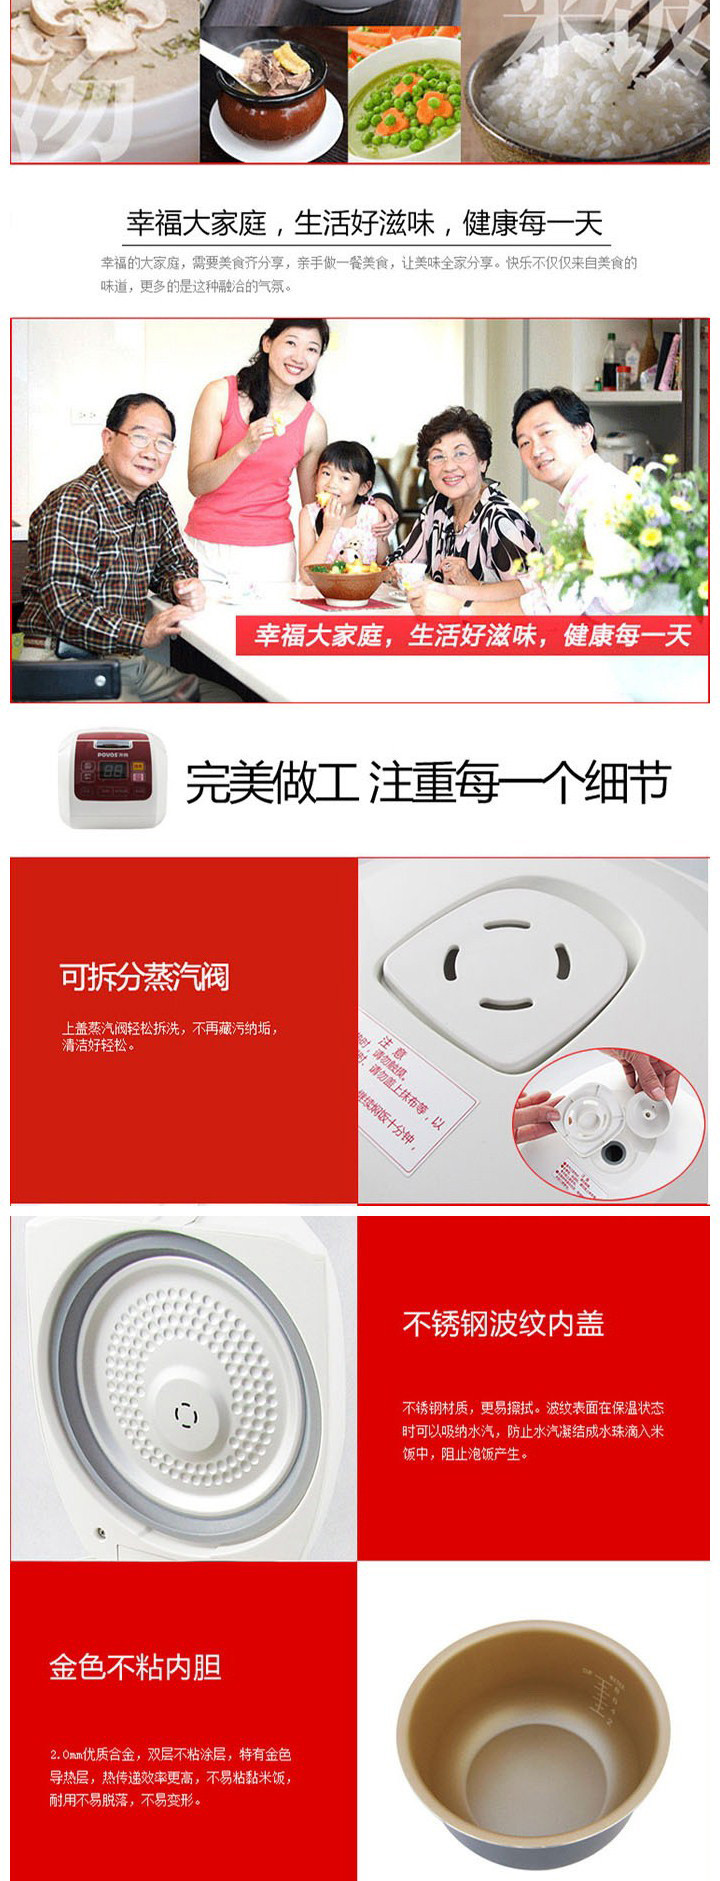 奔腾/POVOS 智能多功能烹饪电饭煲FN304 绚丽中国红3L 24小时预约定时